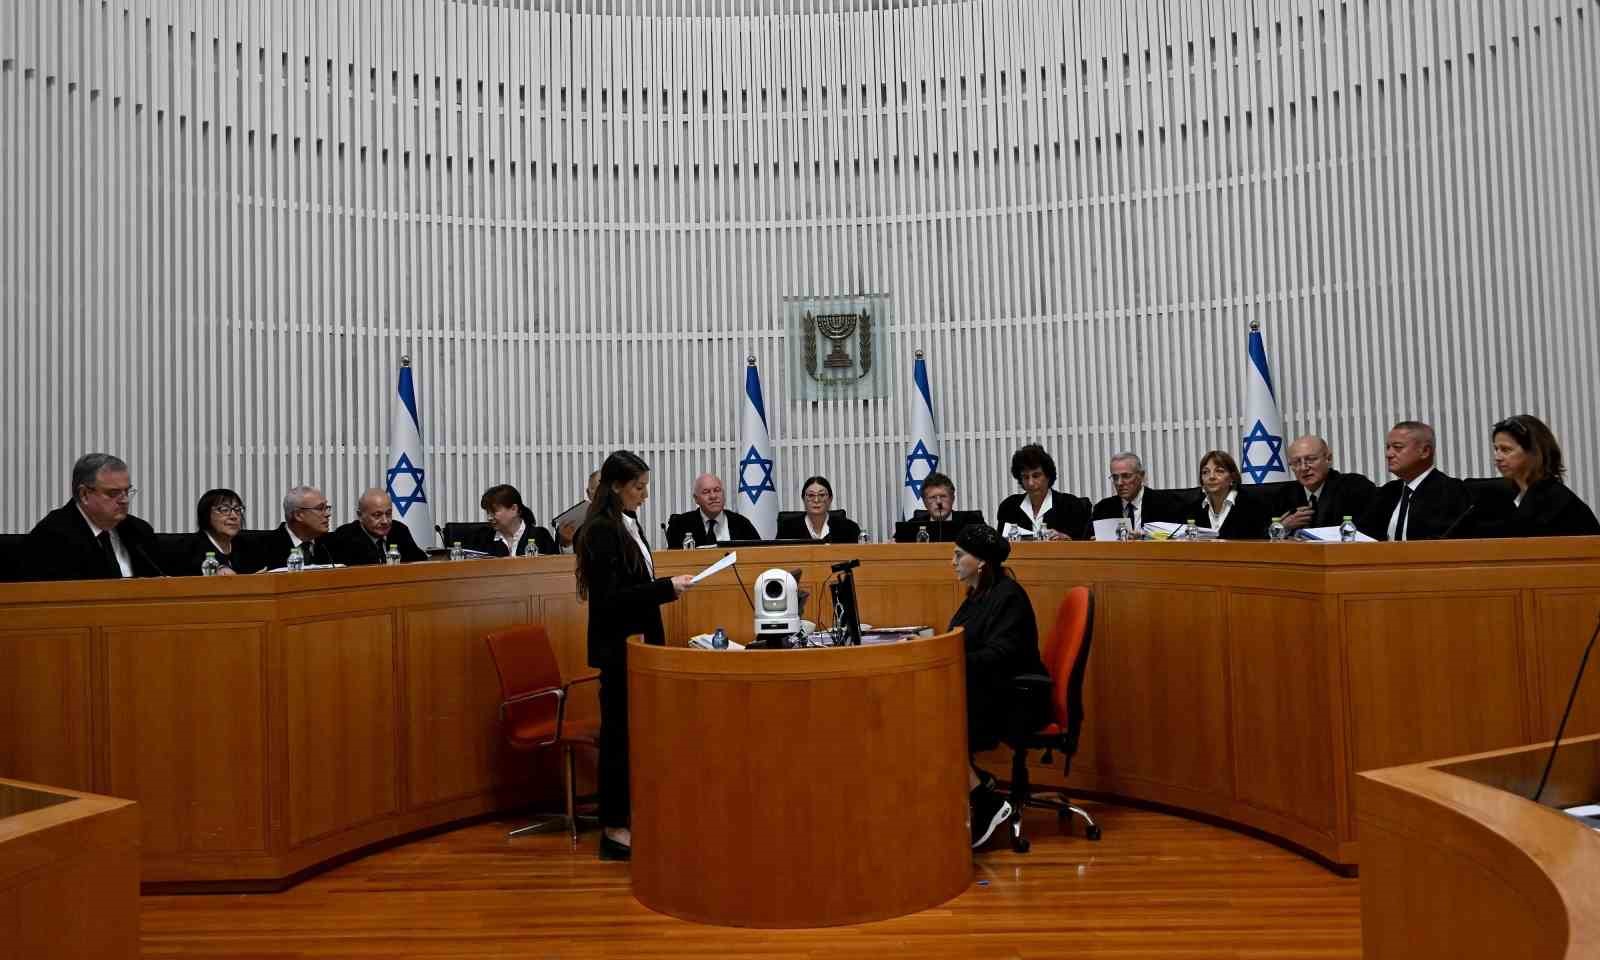 İsrail’de Yüksek Mahkeme, mahkemenin yetkilerini sınırlandıran yasayı iptal etti